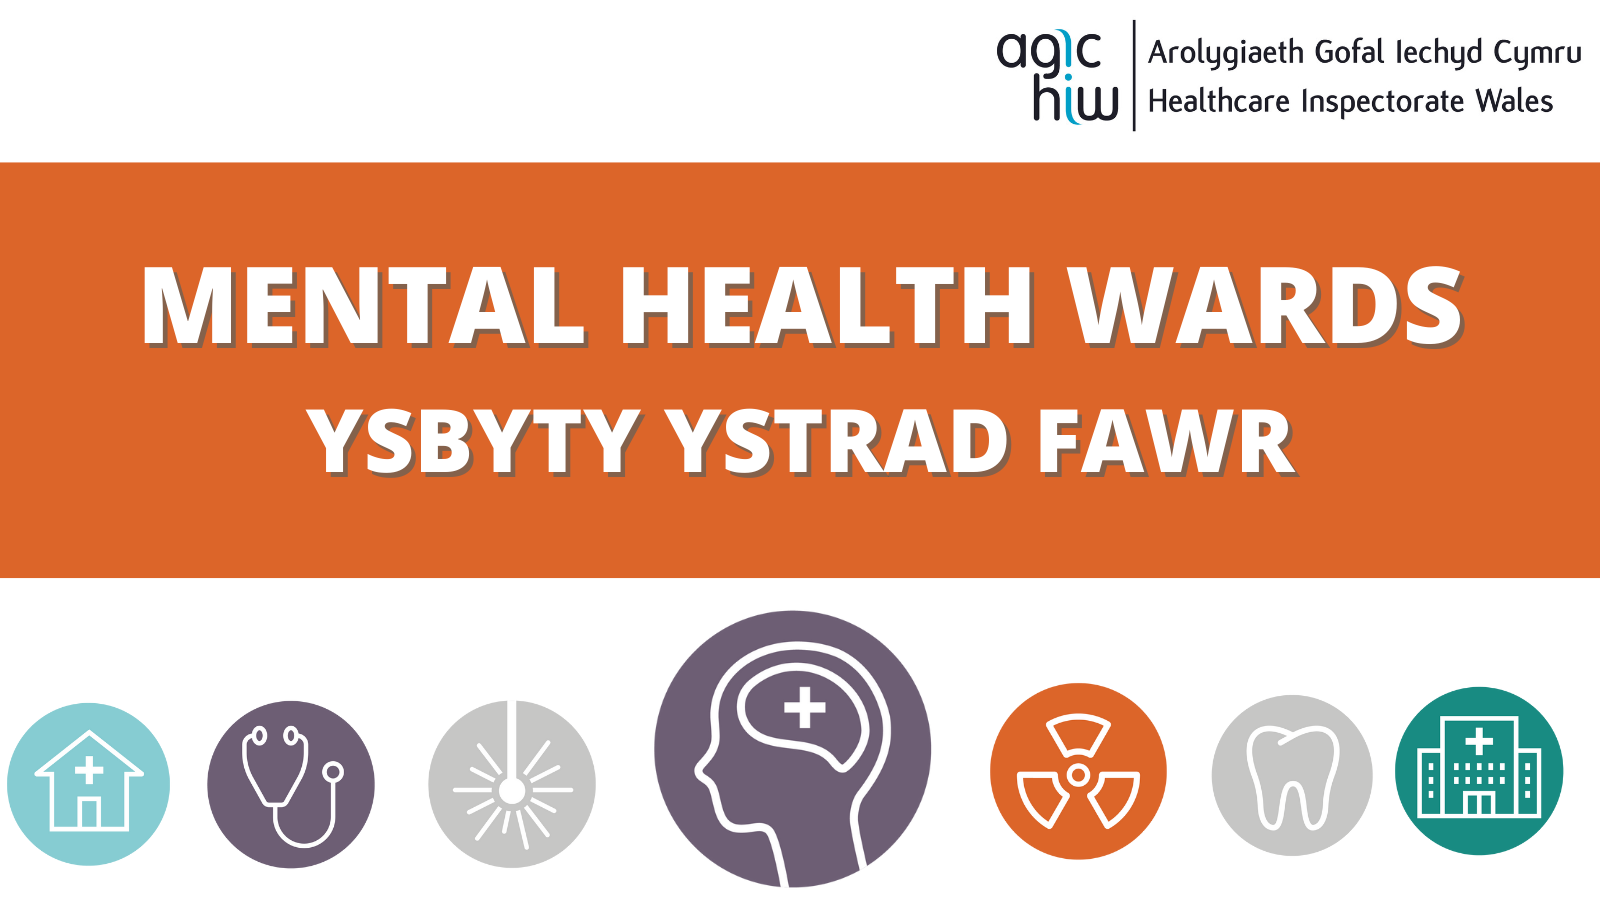 Mental Health Wards - Ysbyty Ystrad Fawr